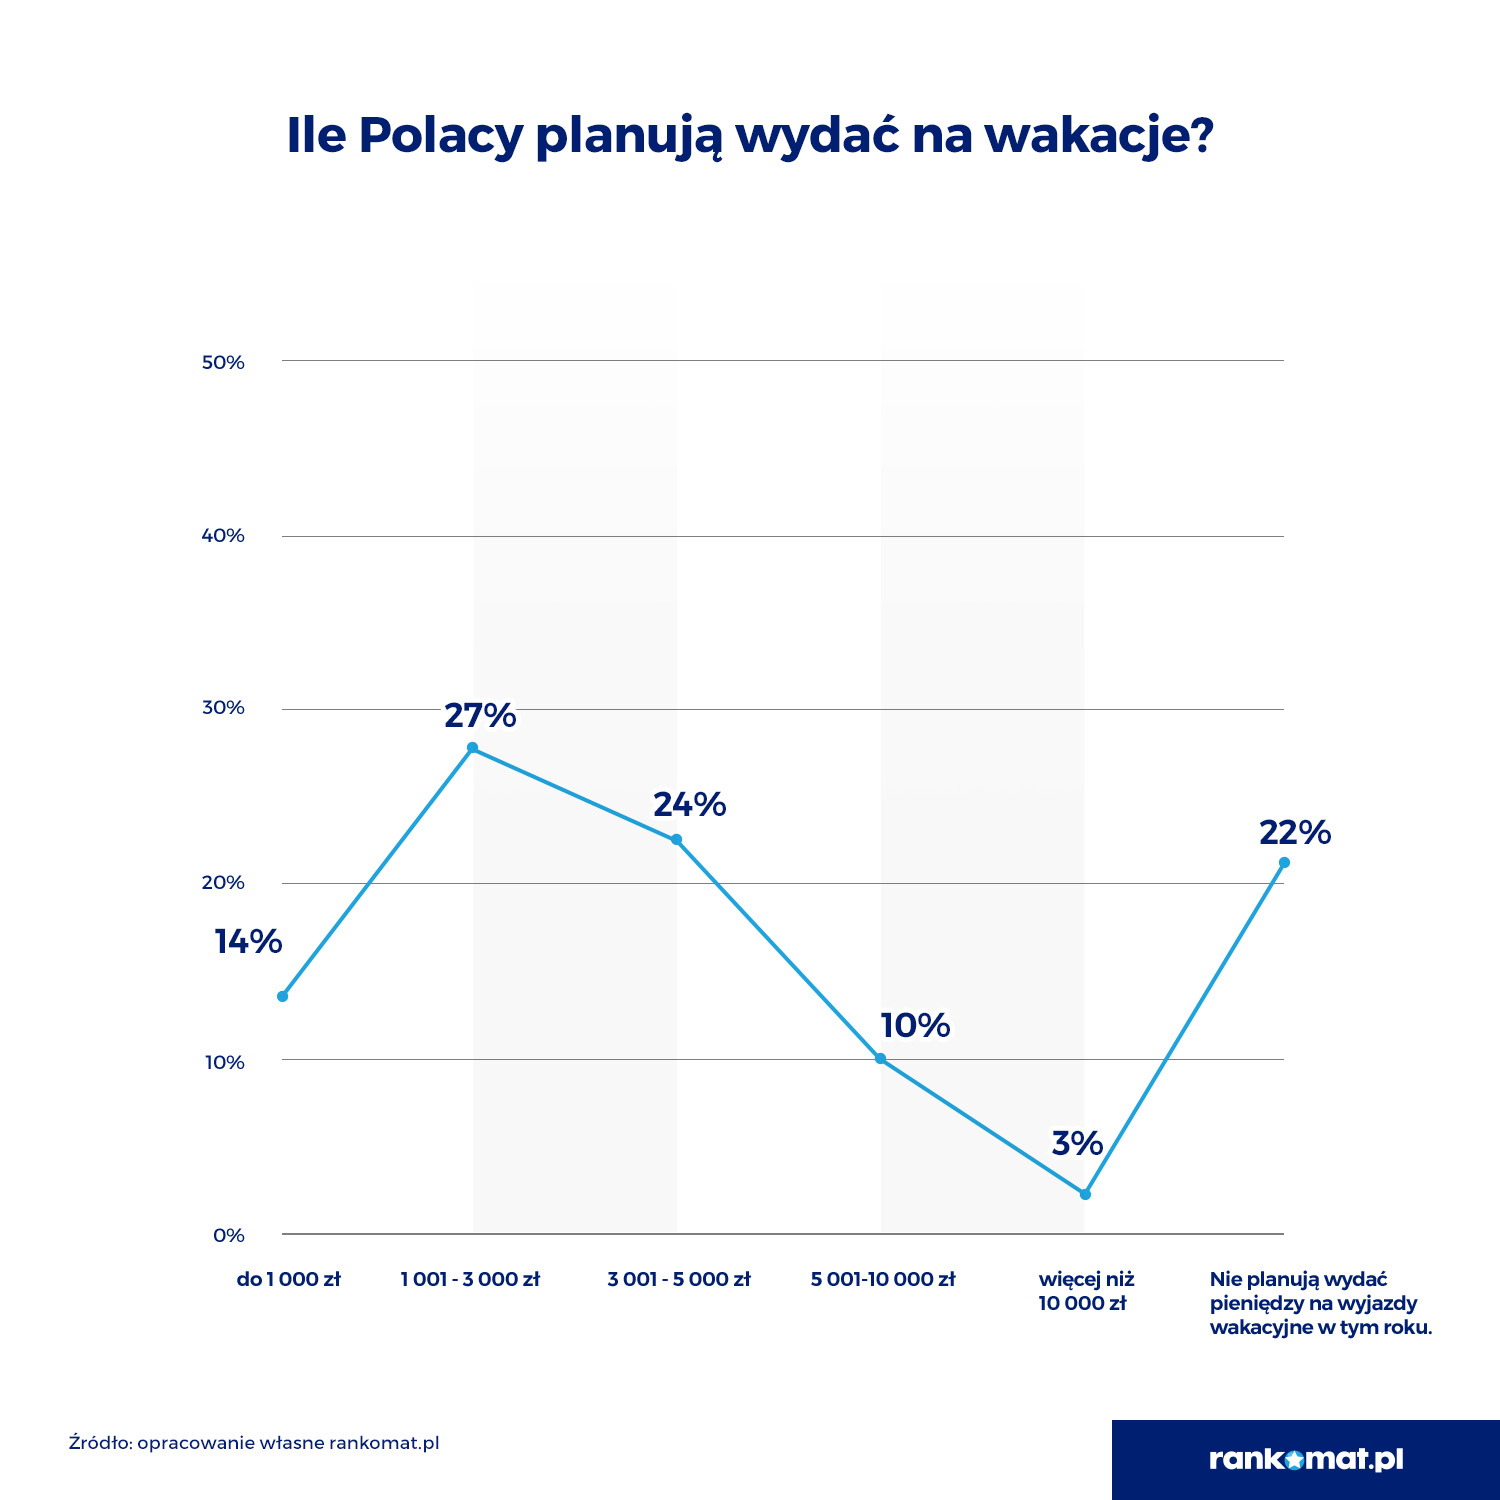 20% Polaków zrezygnowało z wakacji z powodu inflacji. Prawie połowa wyda na urlopowy wyjazd nie więcej niż 3000 zł